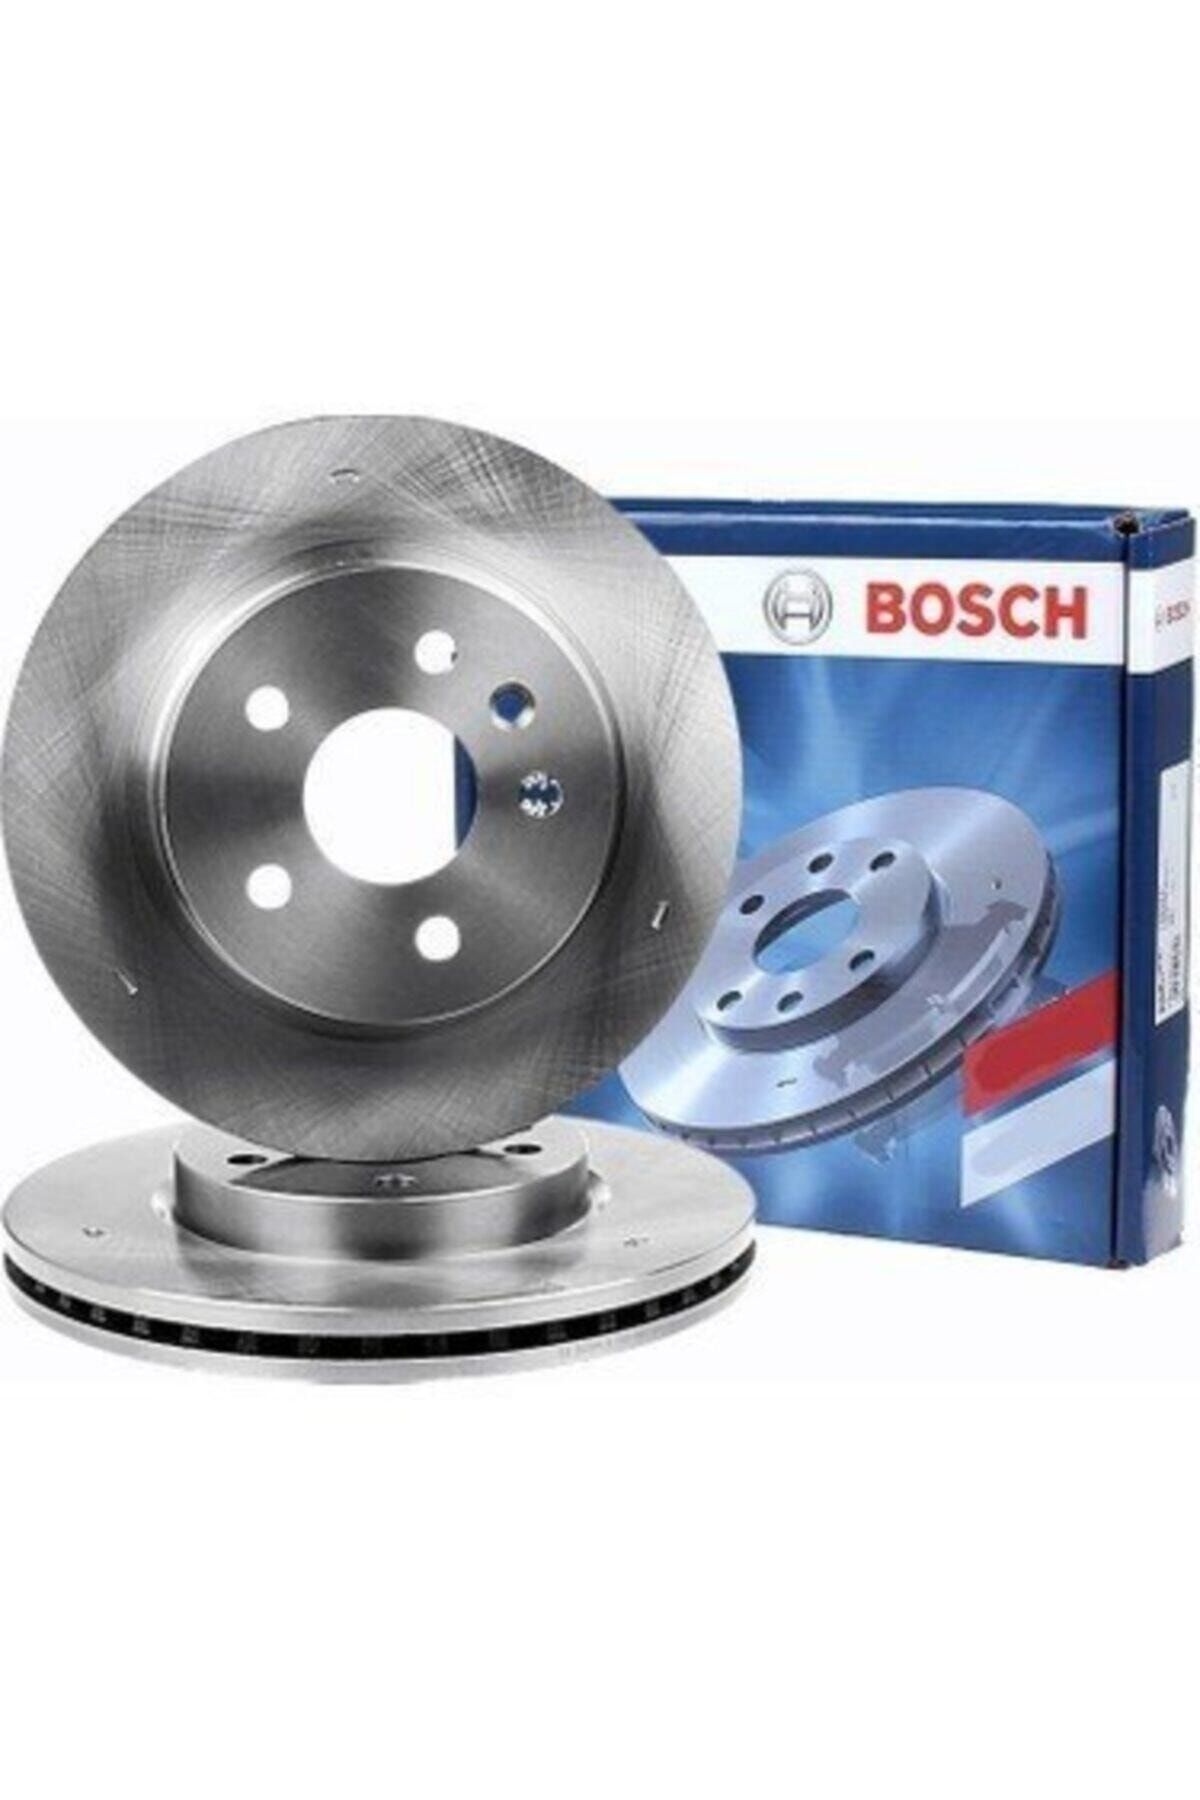 Bosch Fluence - Megane 3 Ön Fren Diski Takım 402064151r